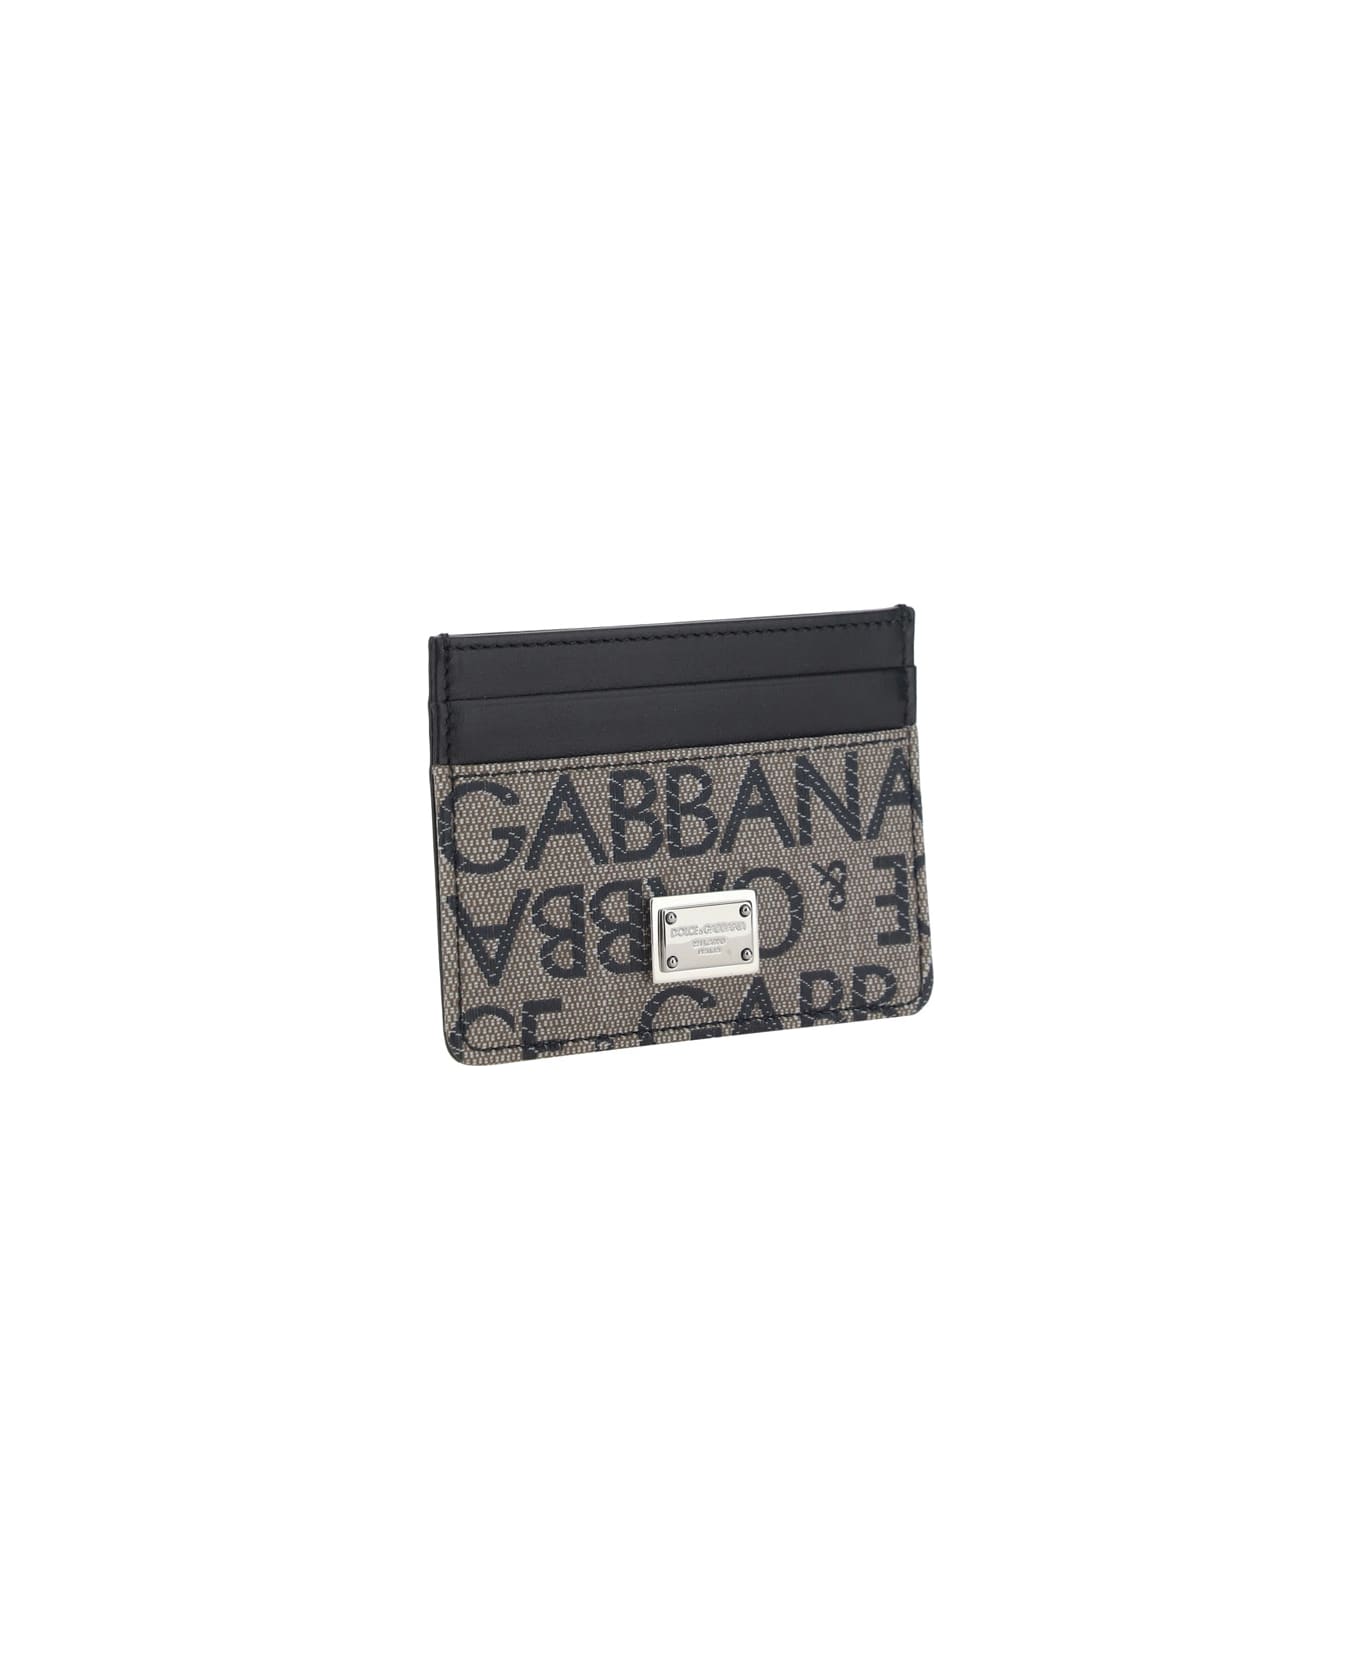 Dolce & Gabbana Card Holder - Marrone/nero